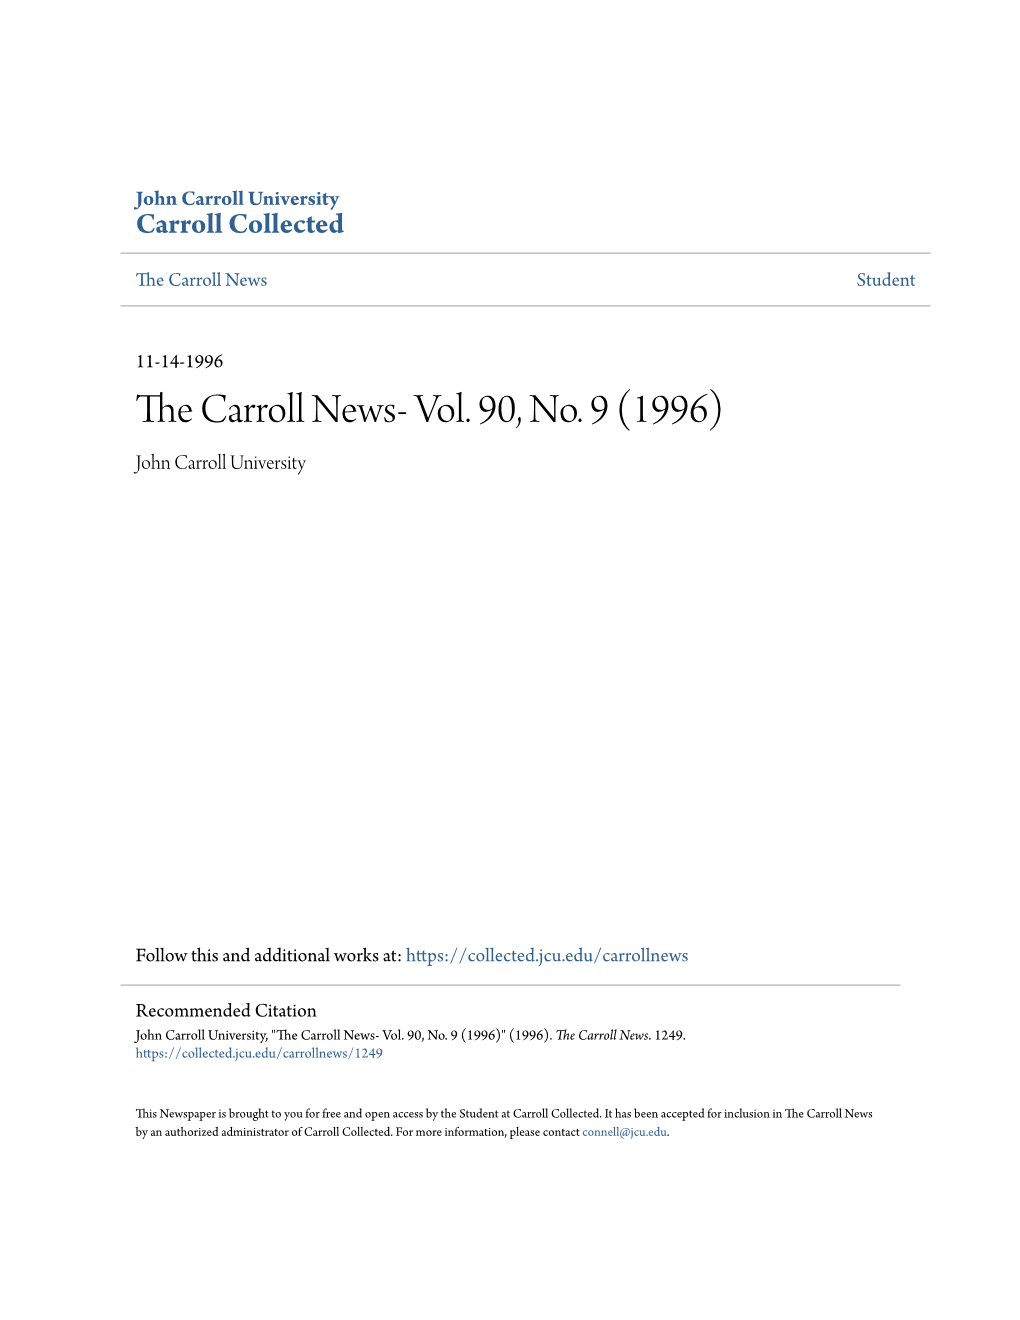 The Carroll News